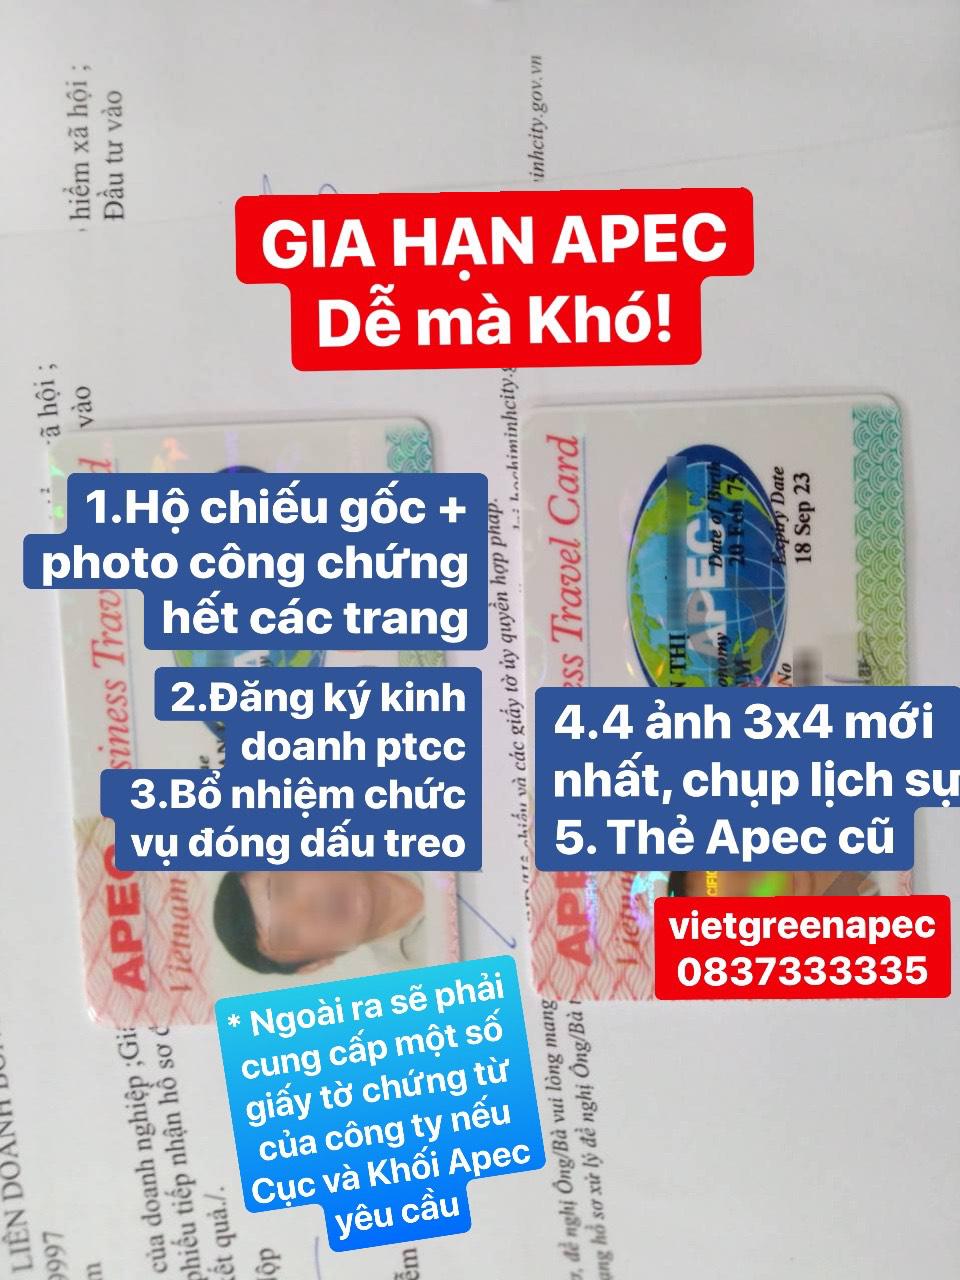 Kinh nghiệm xin cấp thẻ APEC của VIET GREEN APEC 